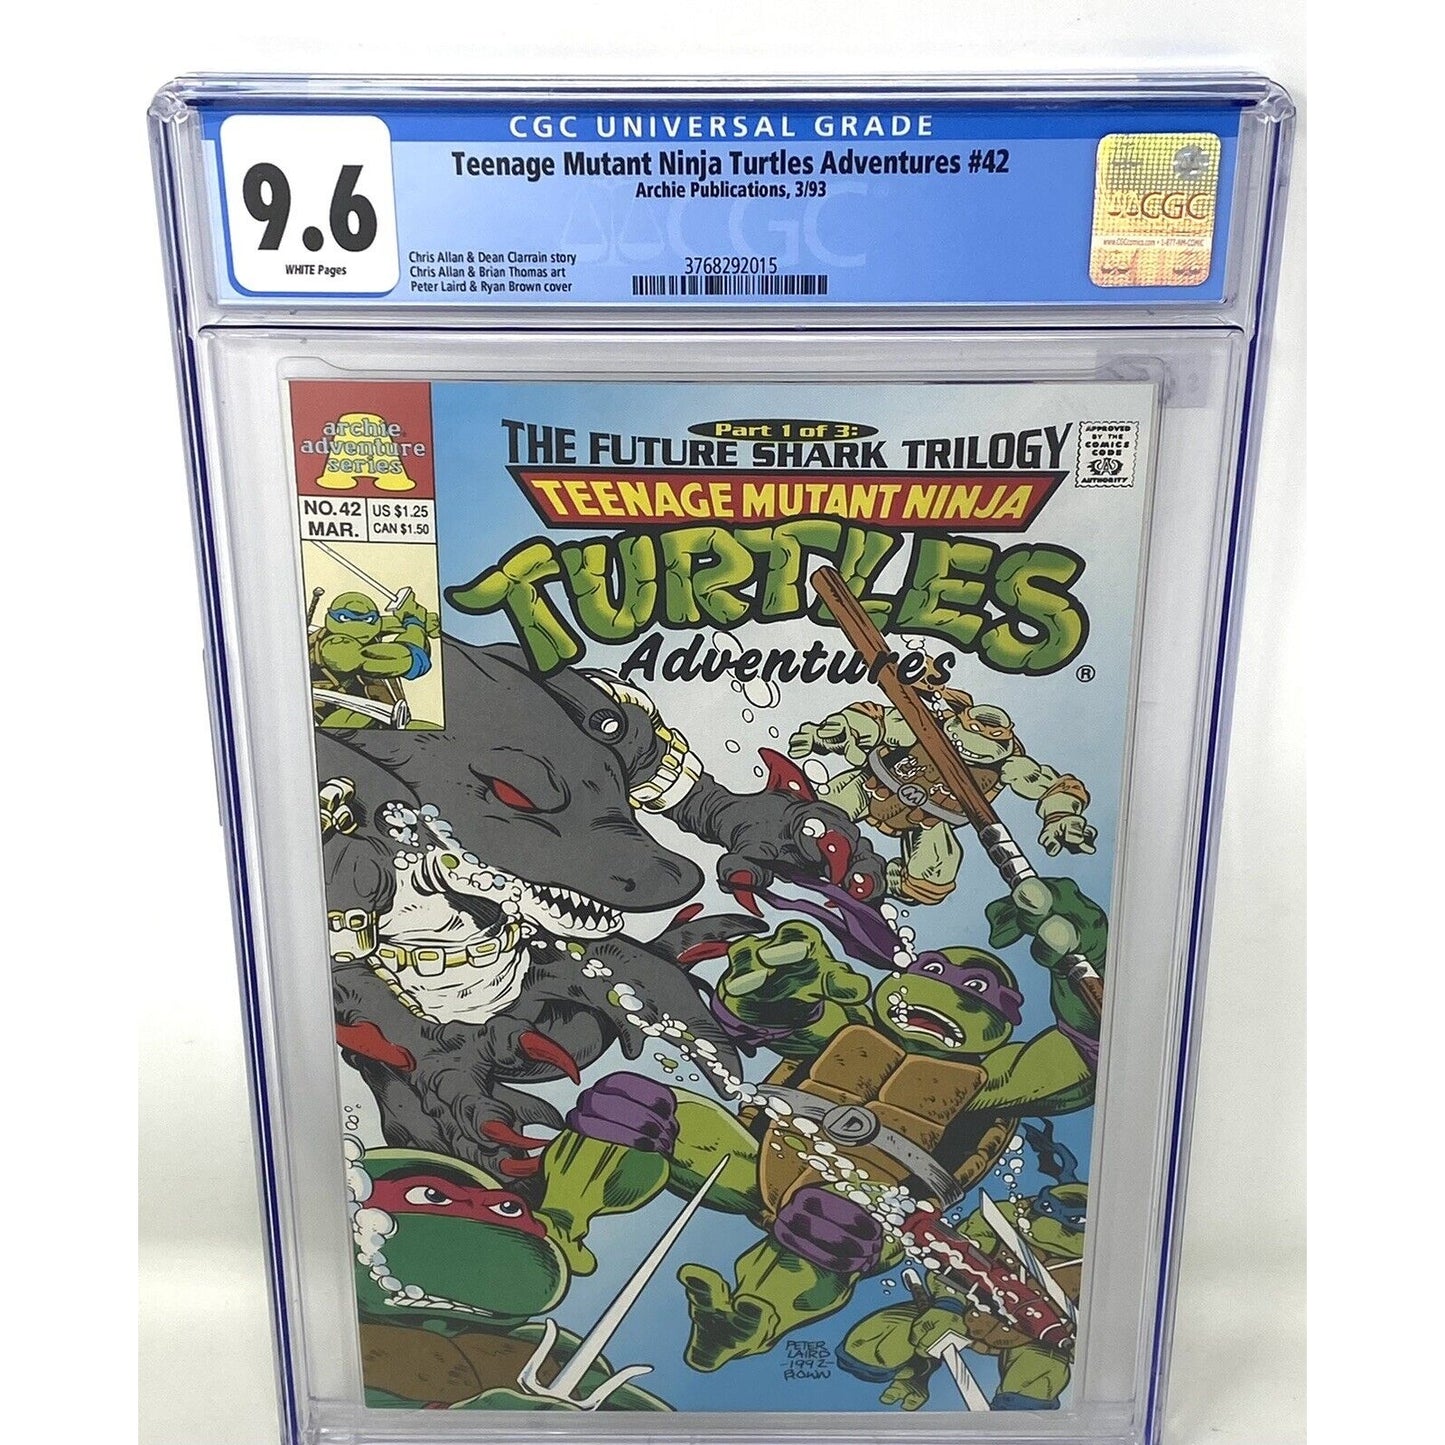 9.6 CGC Archie 1993 Teenage Mutant Ninja Turtles Adventures #42 Comic